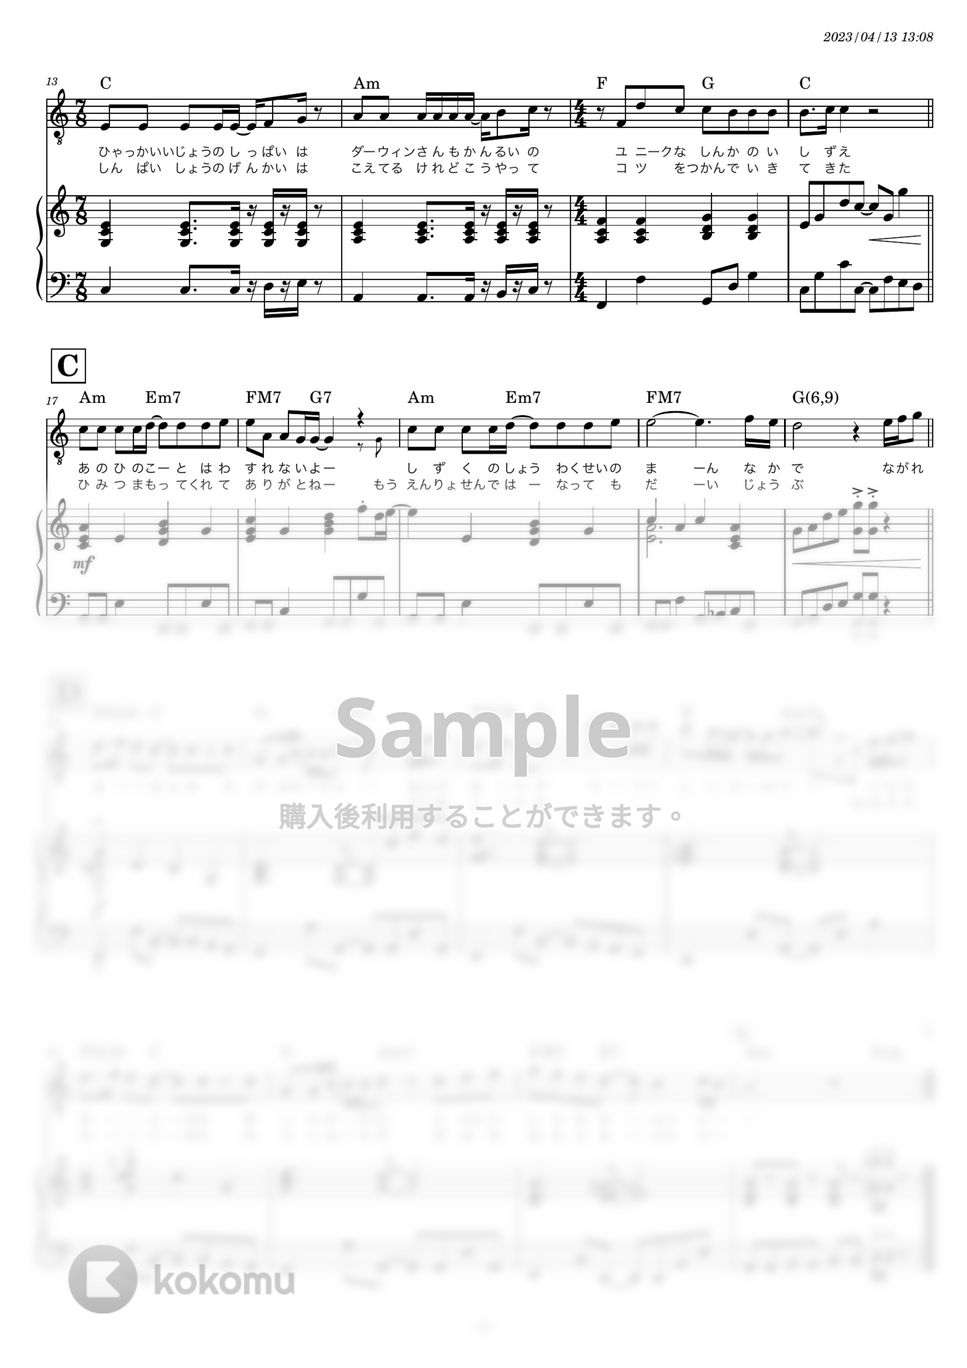 スピッツ - 美しい鰭 (キー-1 Cメジャー やや簡単ピアノ伴奏) by 糸川瑞樹